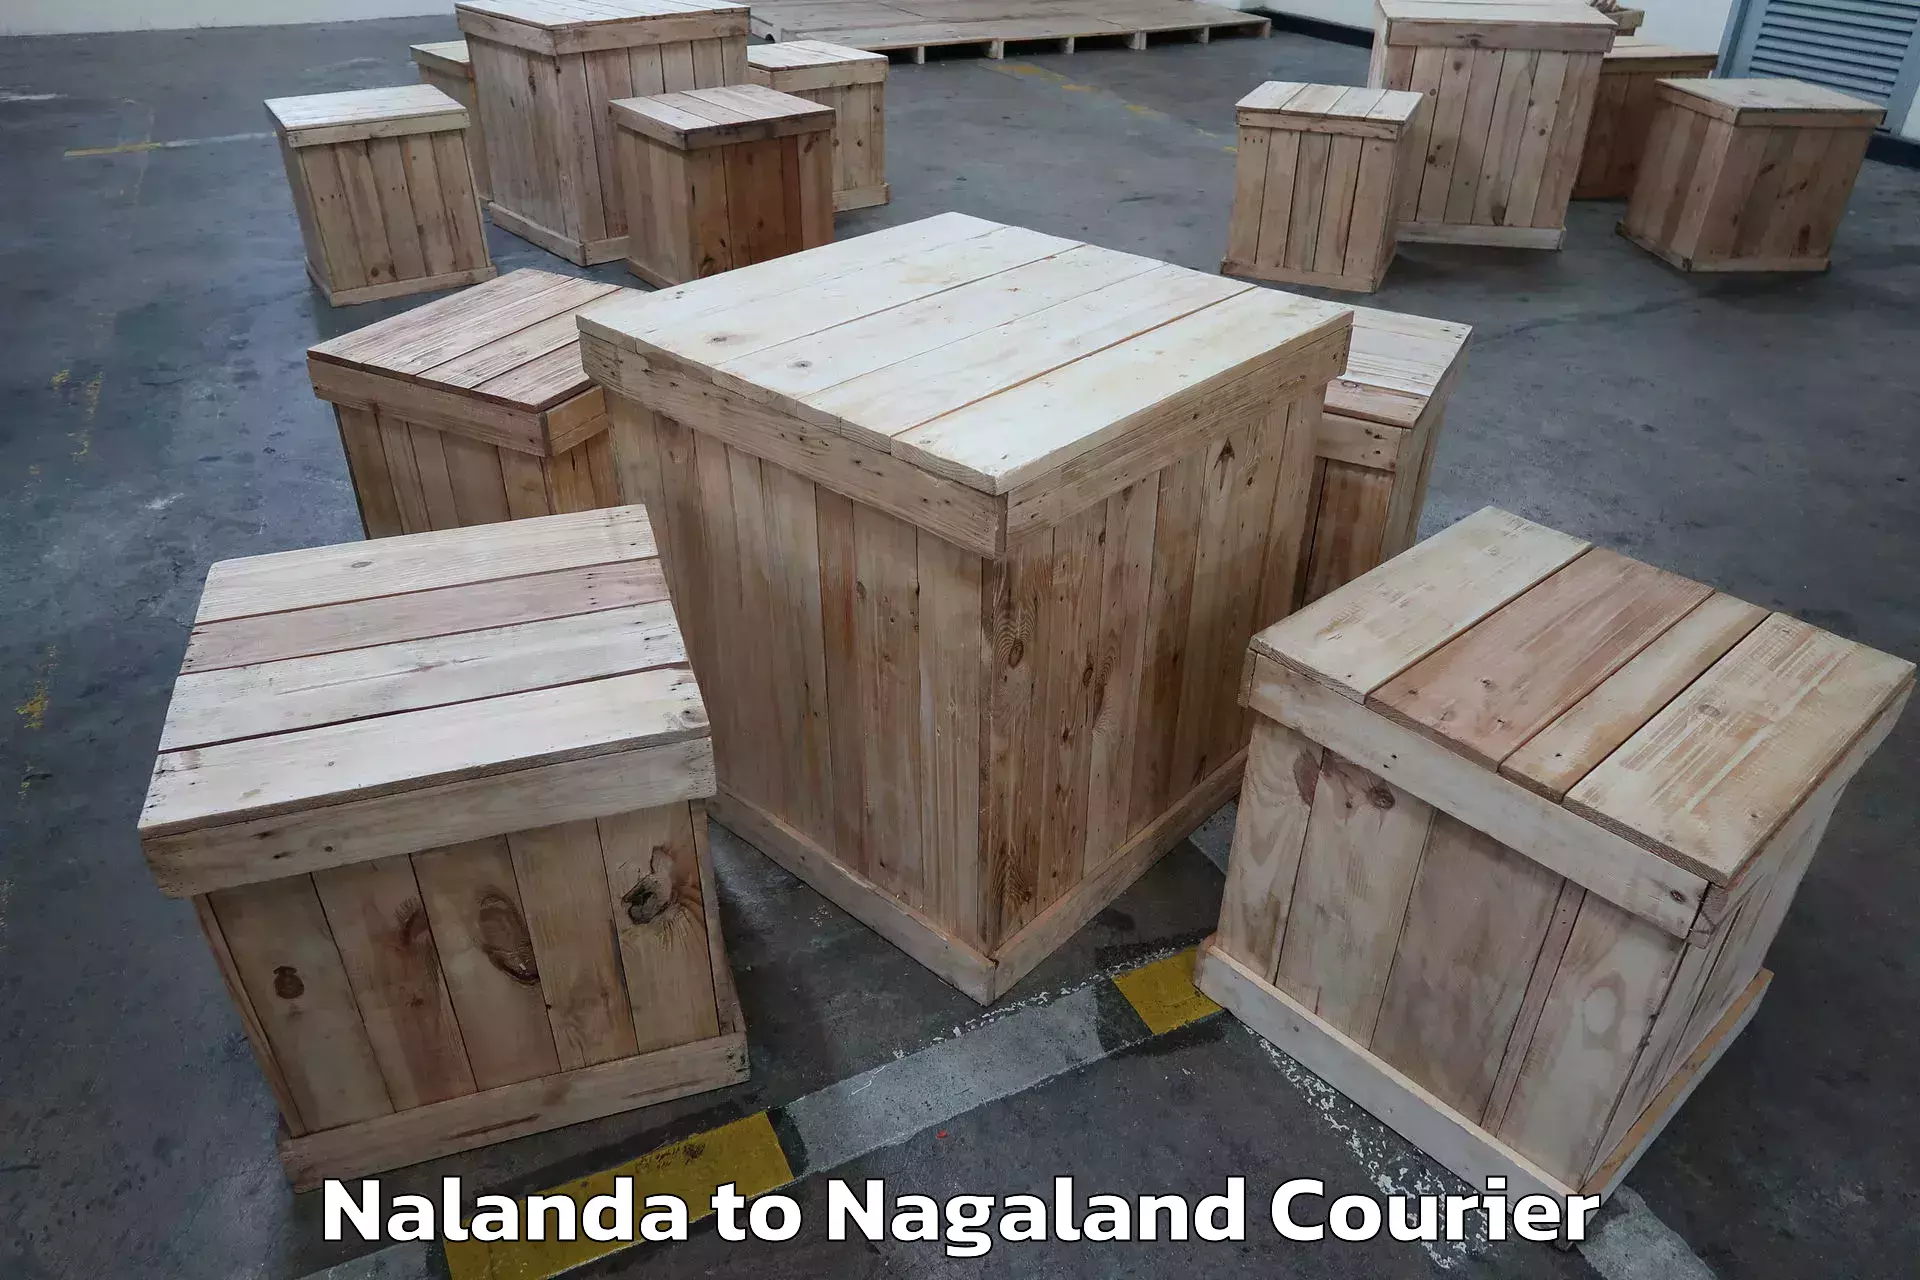 Expert goods movers Nalanda to Nagaland